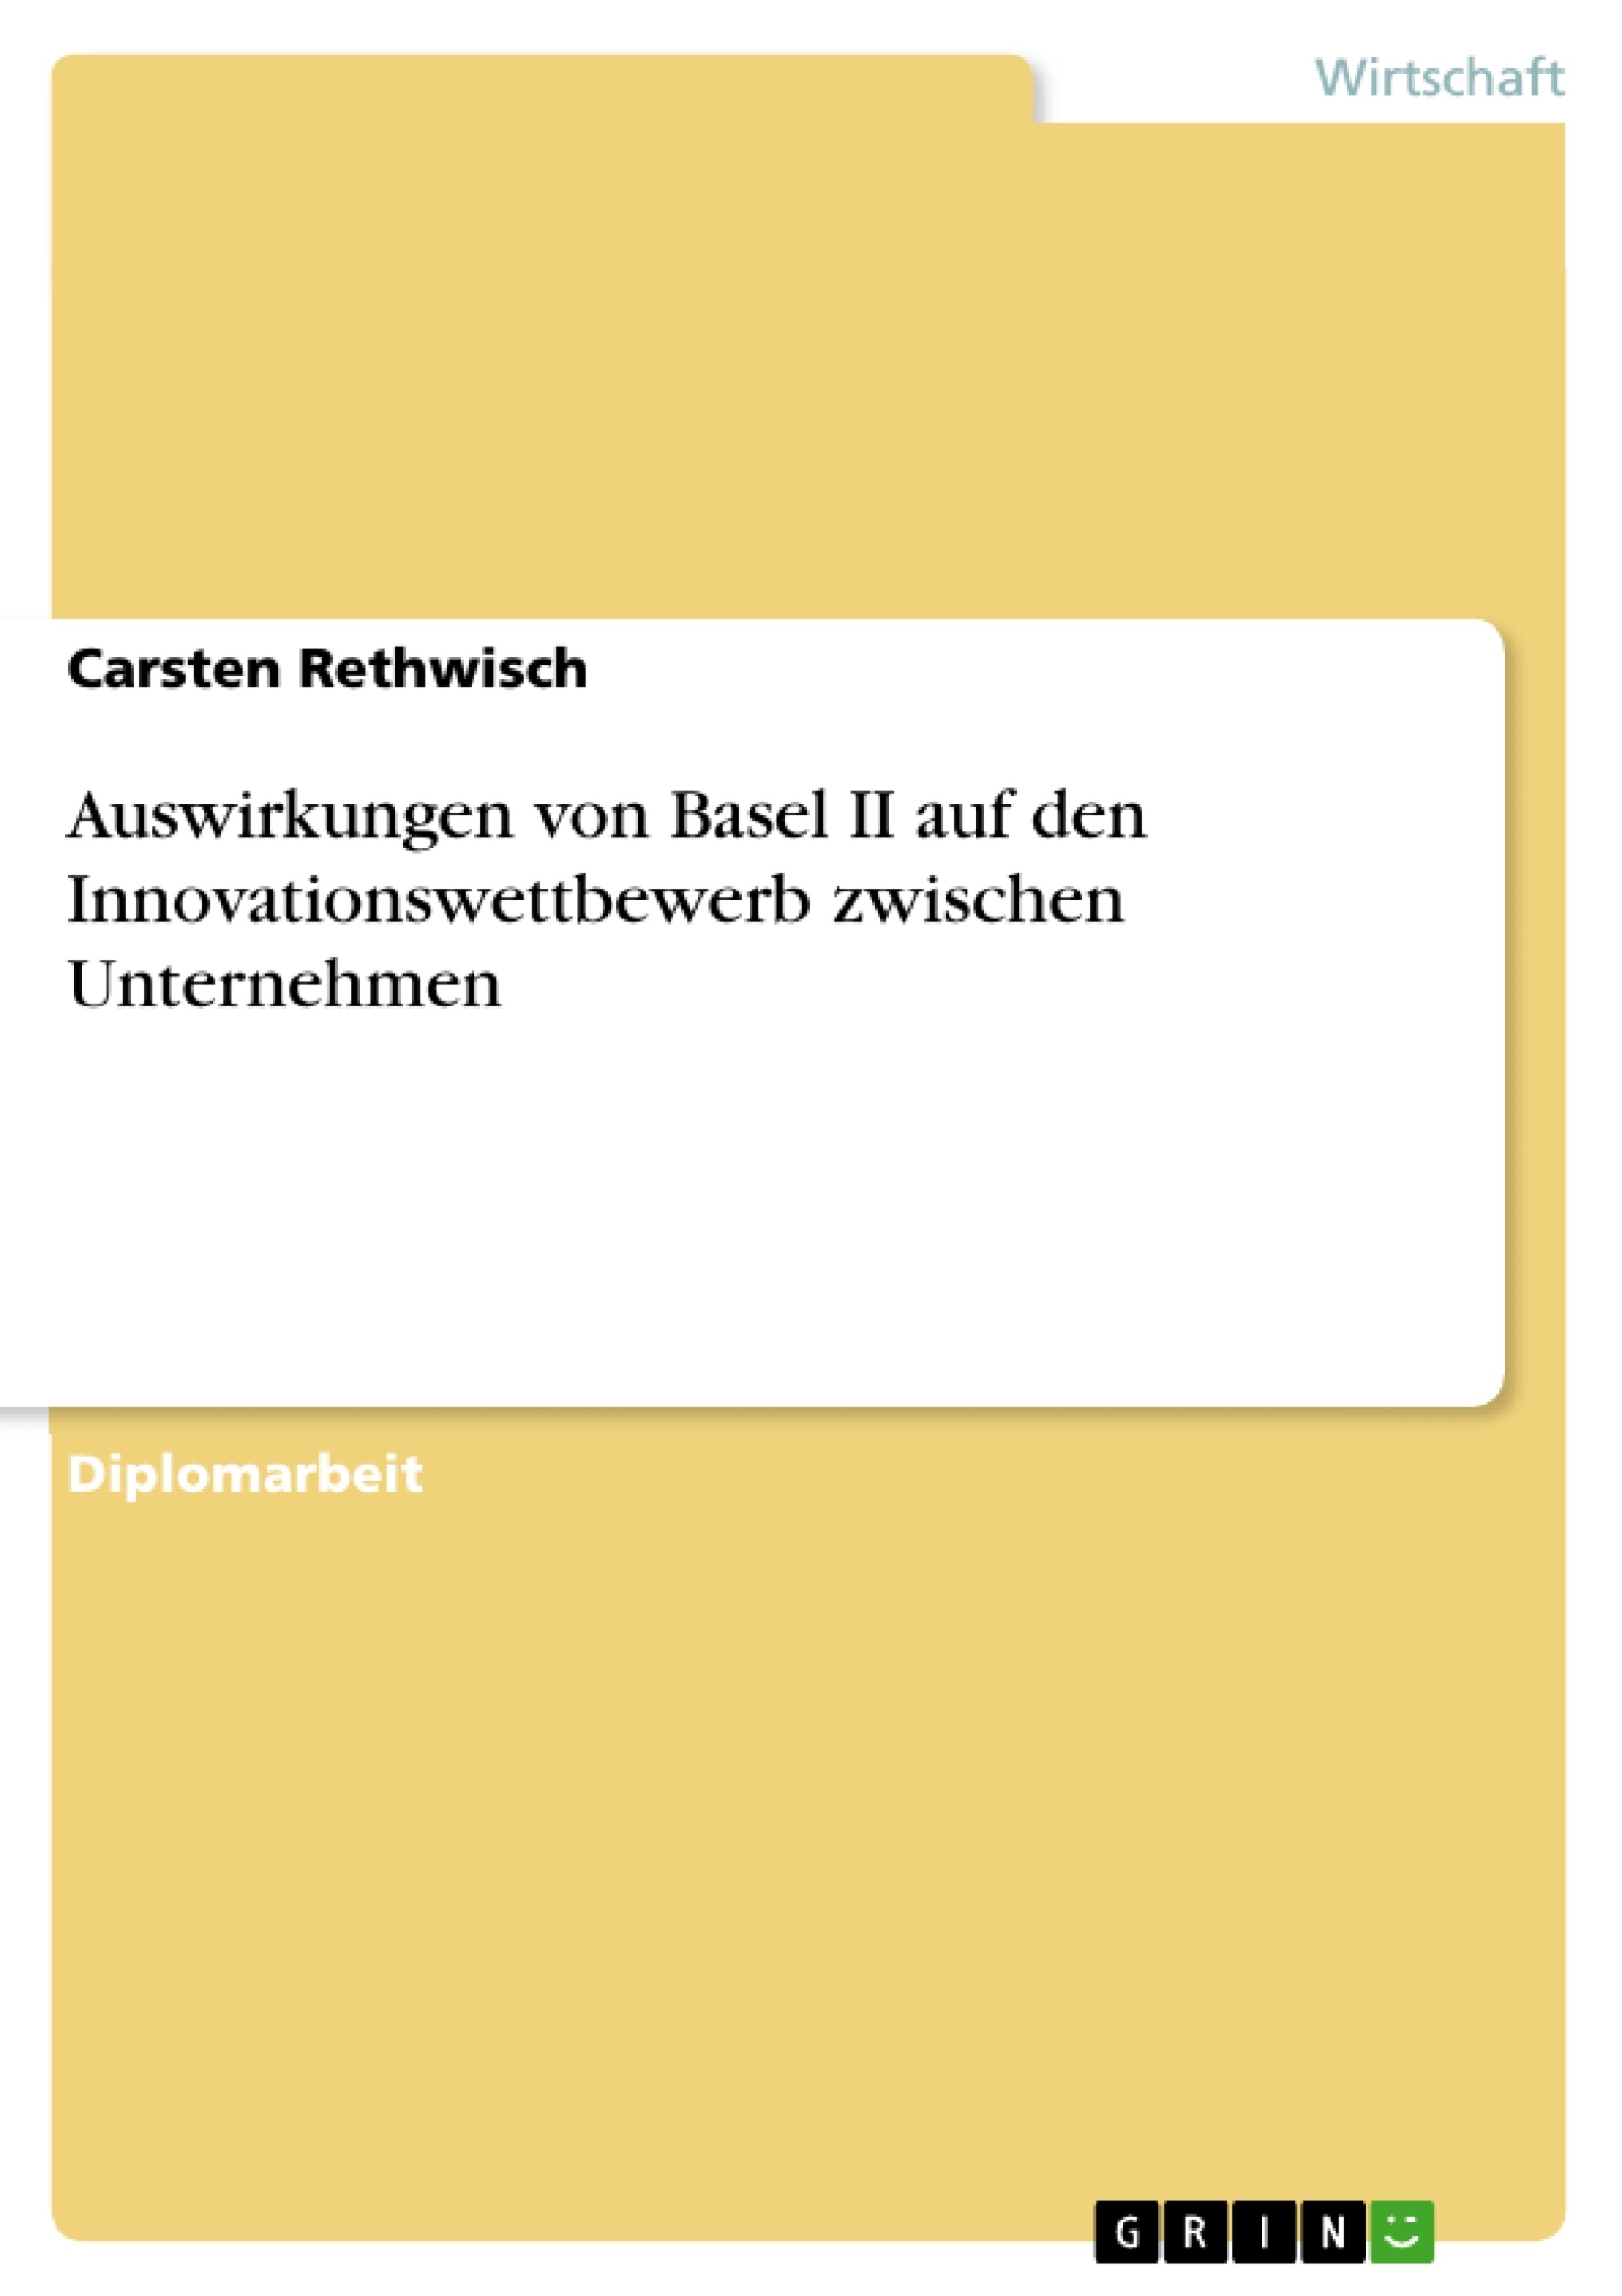 Título: Auswirkungen von Basel II auf den Innovationswettbewerb zwischen Unternehmen